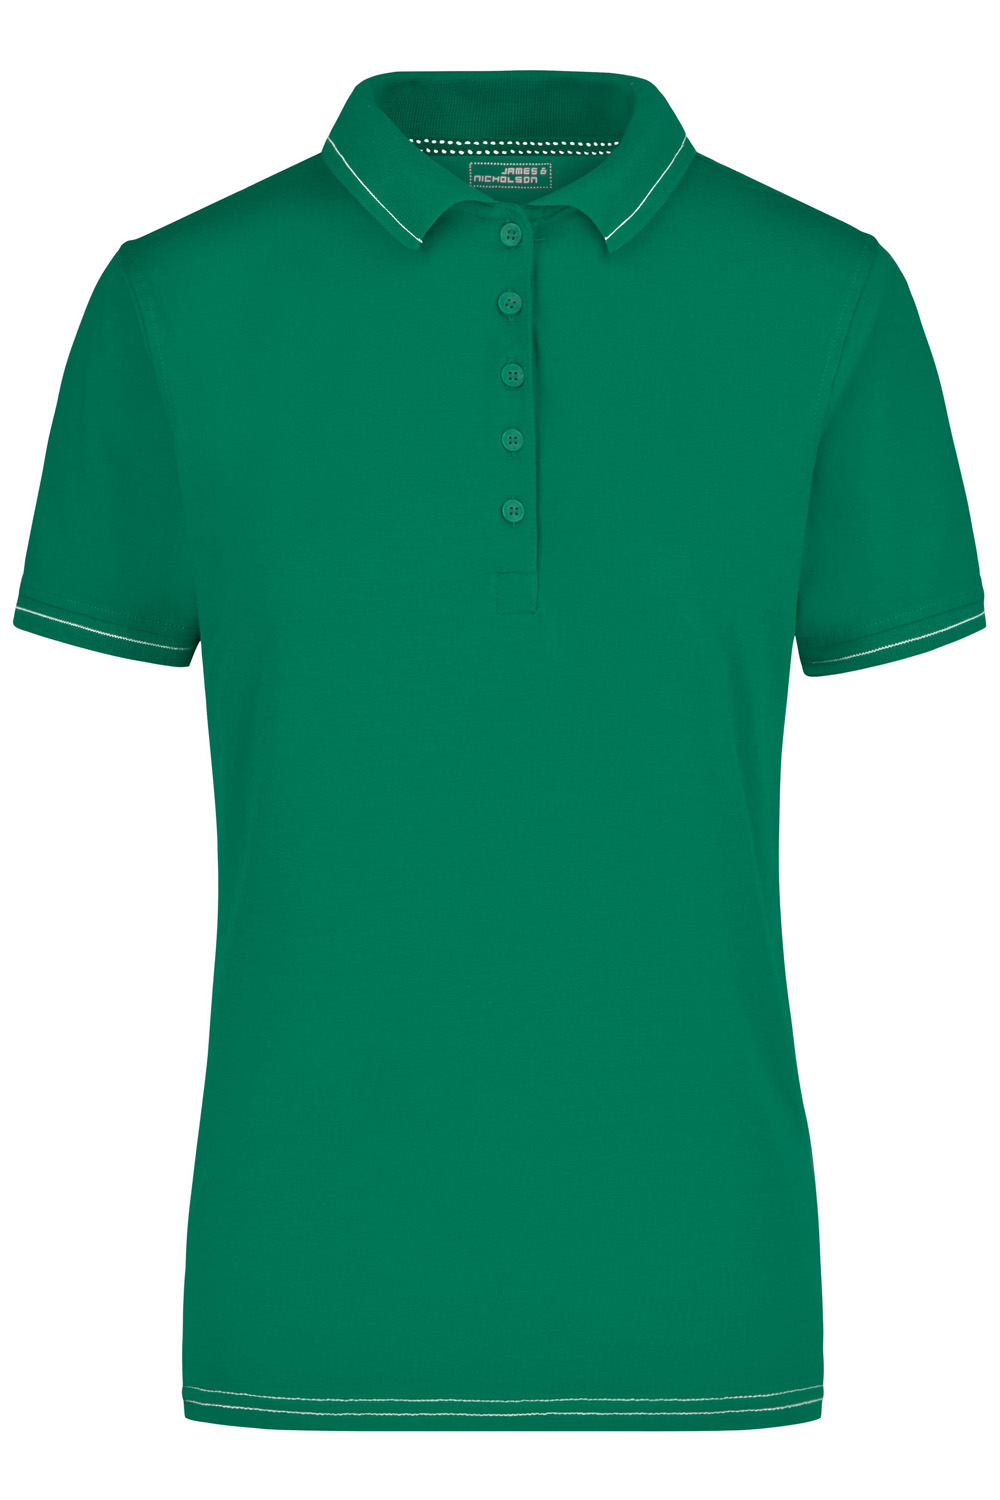 Poloshirt kurzarm James&Nicholson Ladies Elastic Polo JN568 irish-green/white